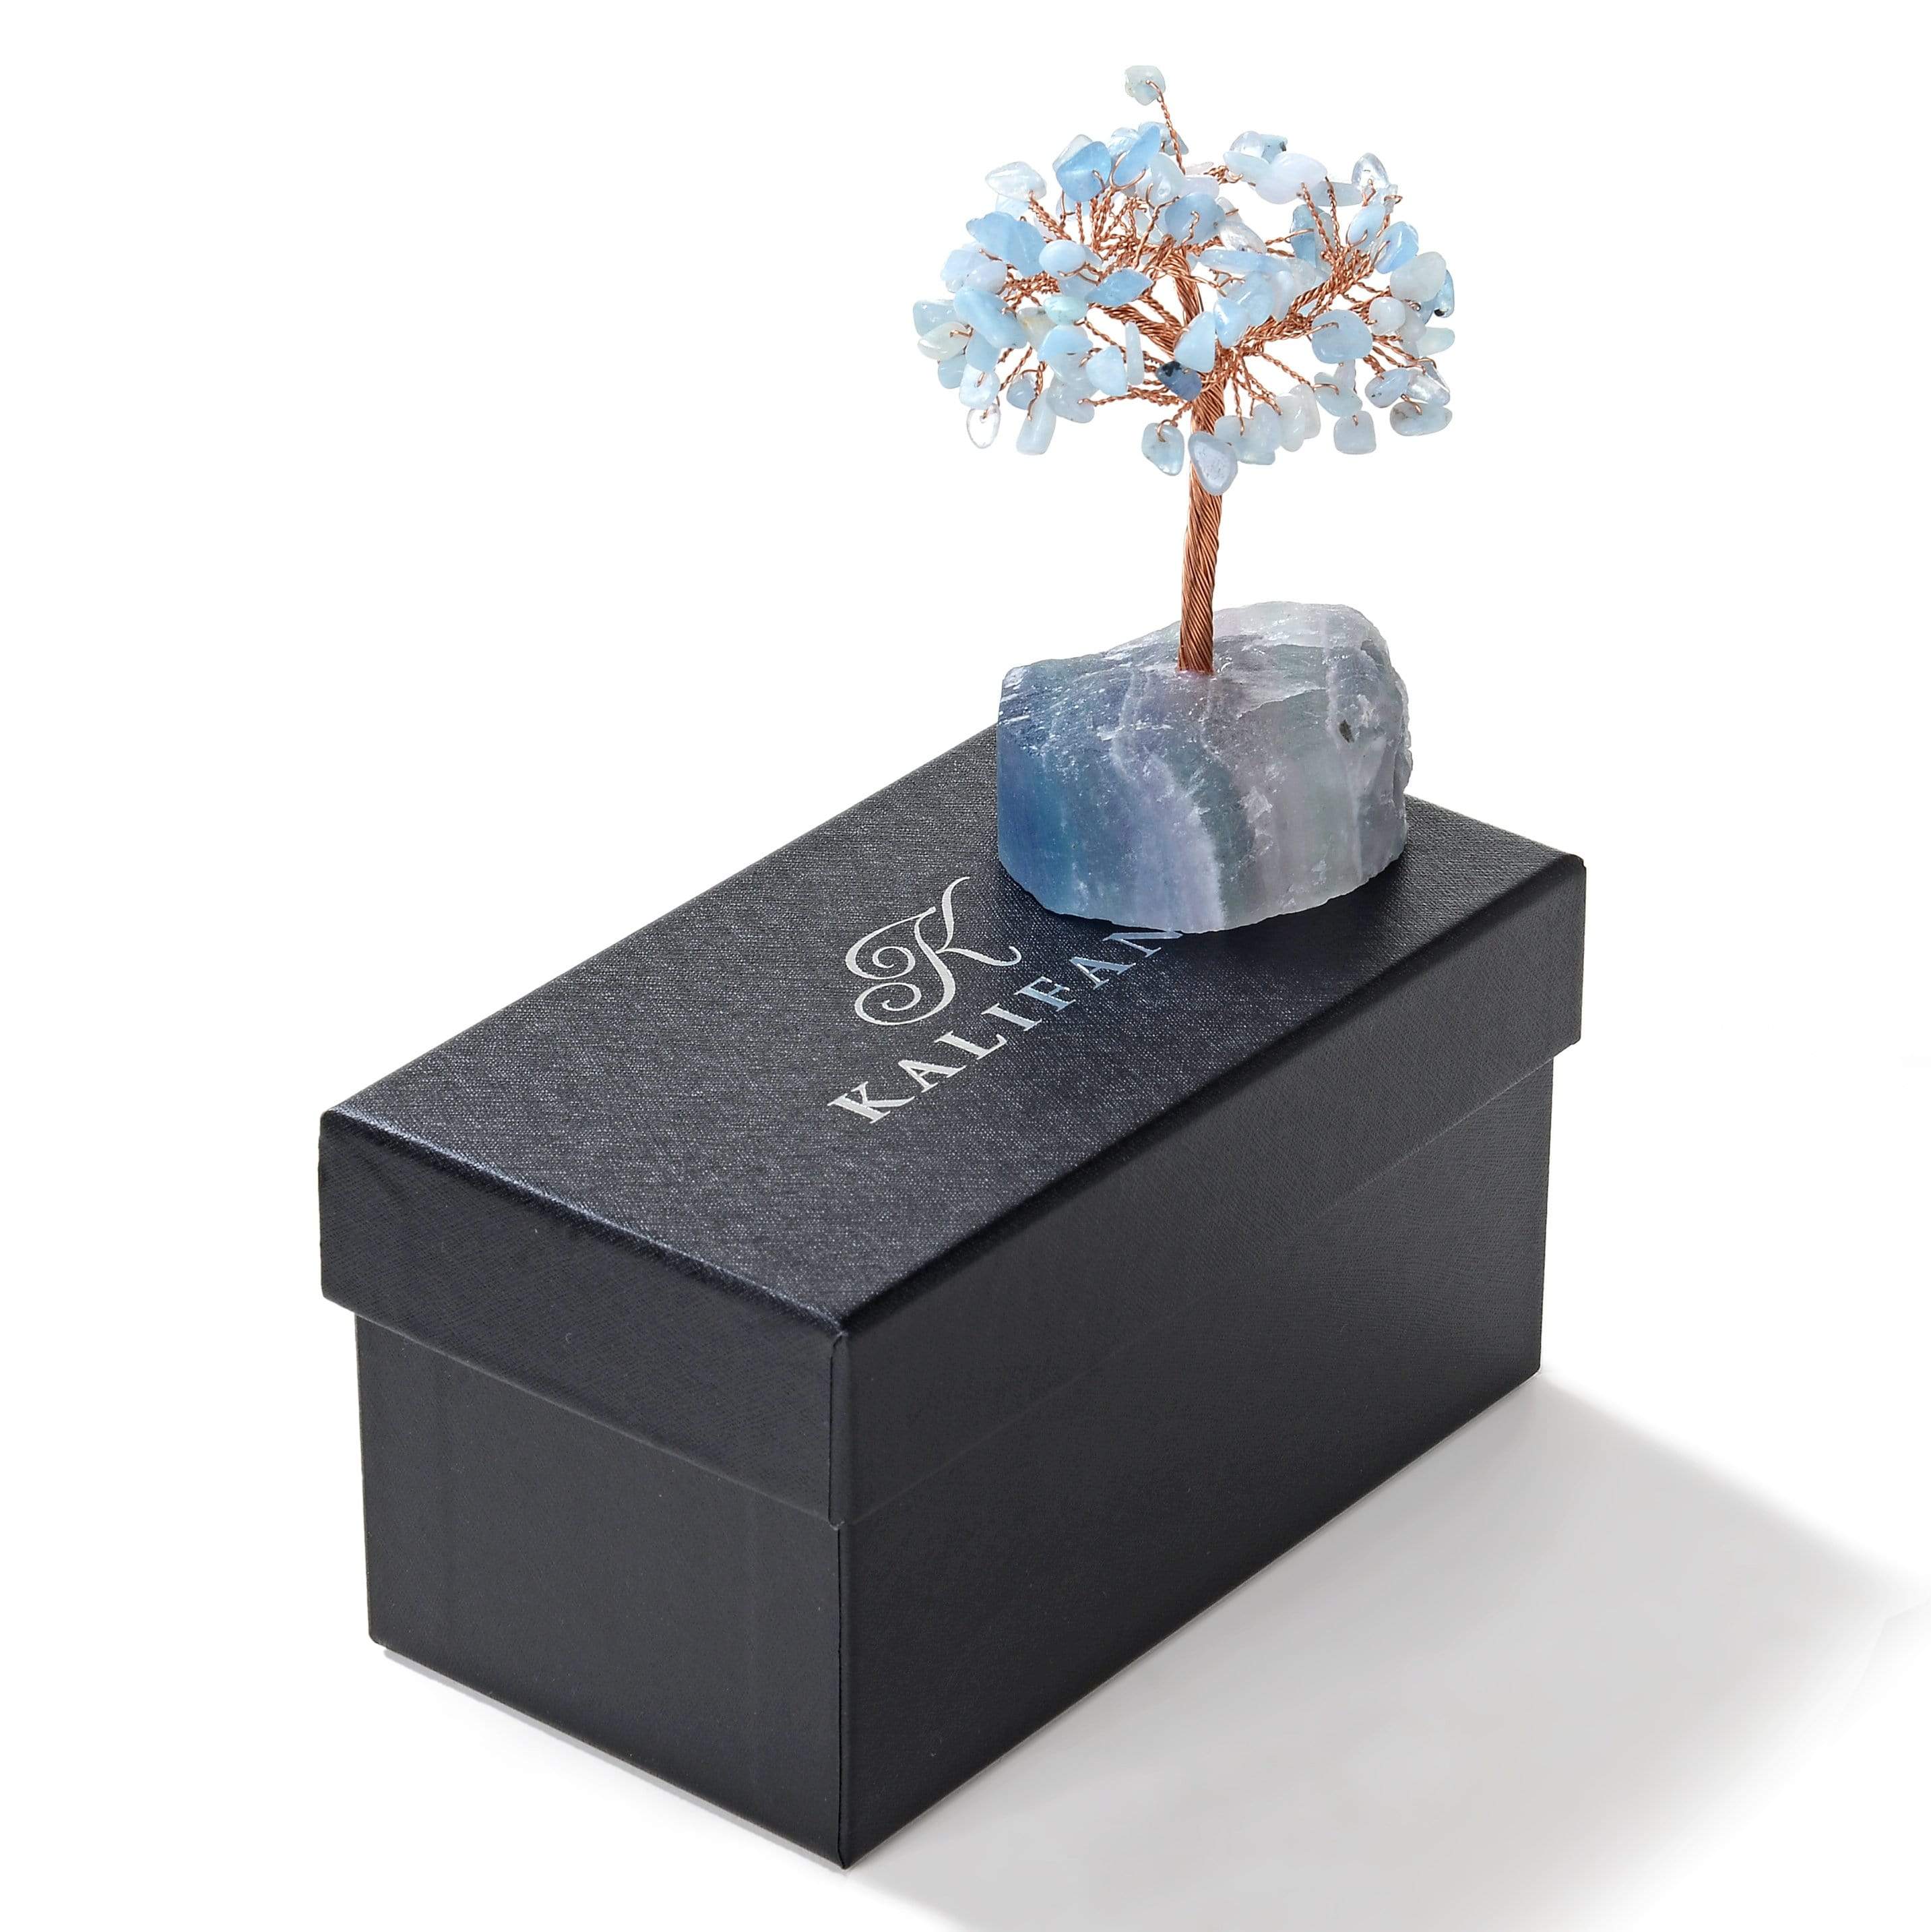 Kalifano Gemstone Trees Aquamarine Natural Gemstone Tree of Life with Fluorite Base K913F-AQ